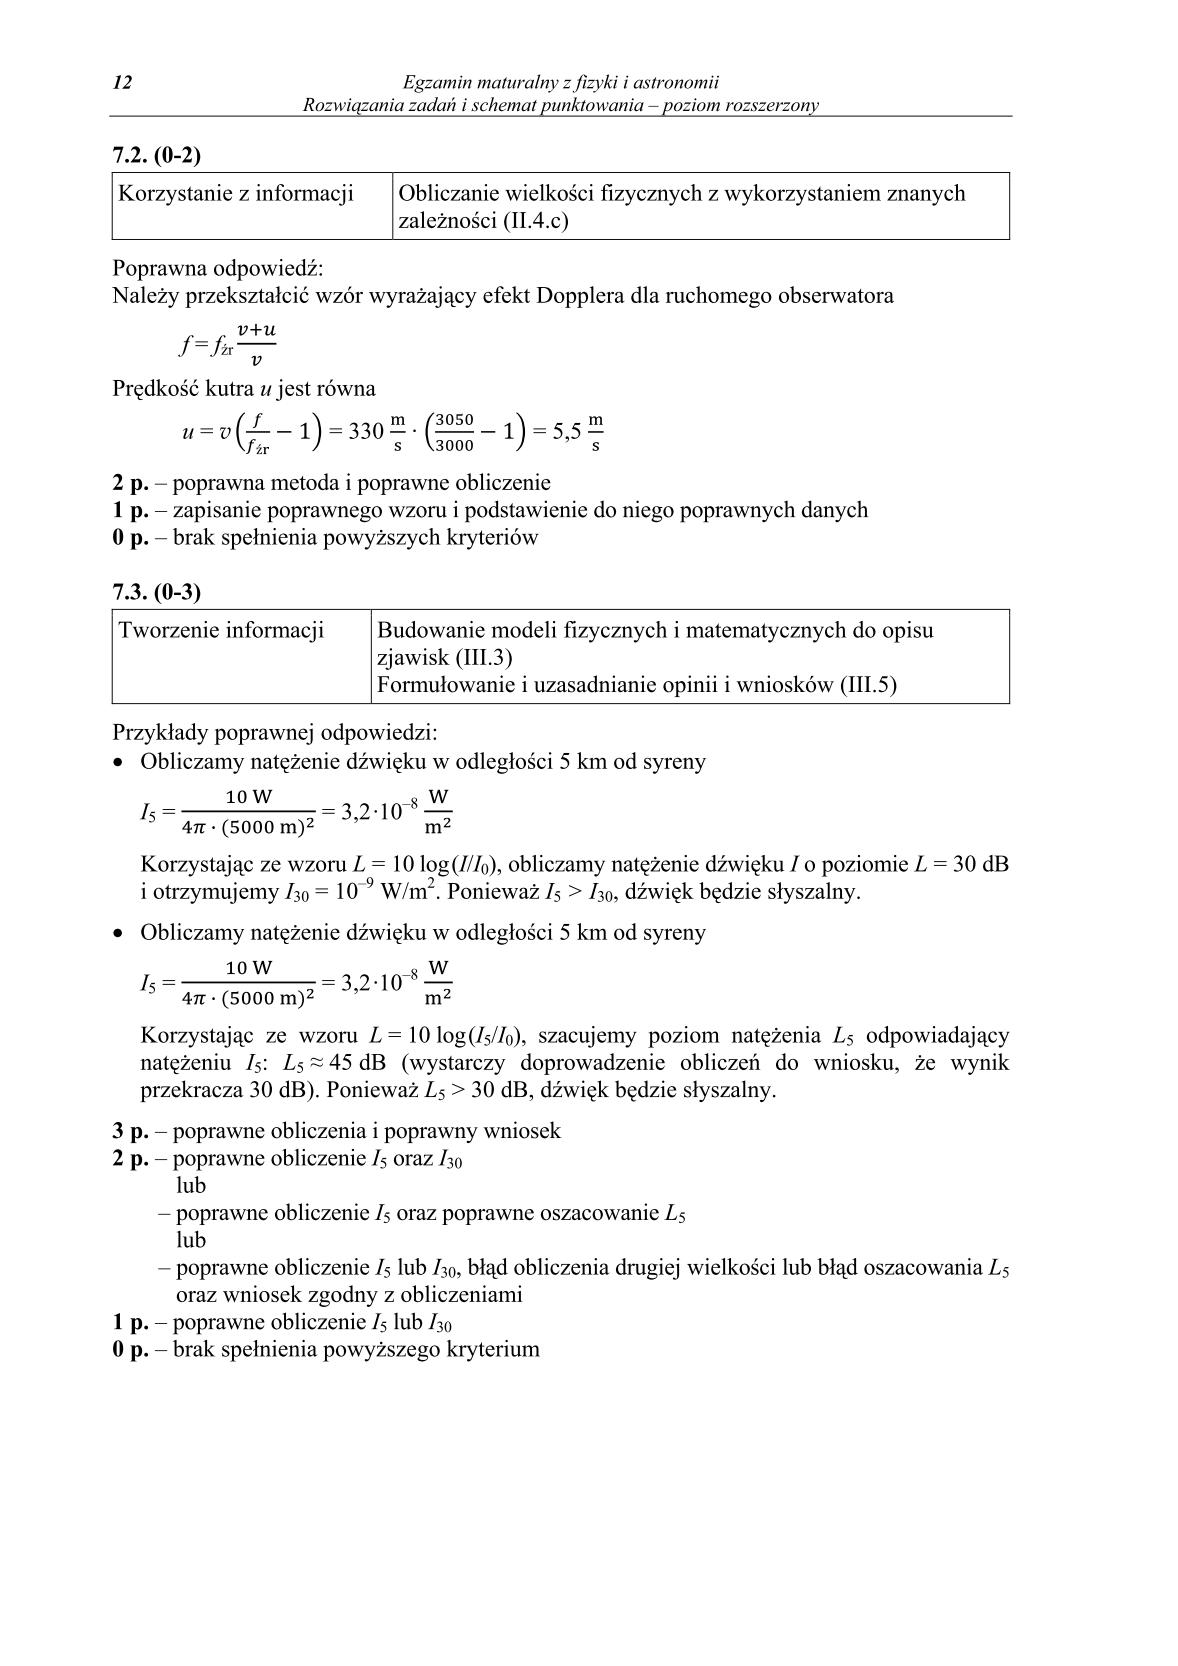 odpowiedzi-fizyka-i-astronomia-poziom-rozszerzony-matura-2014-str.12